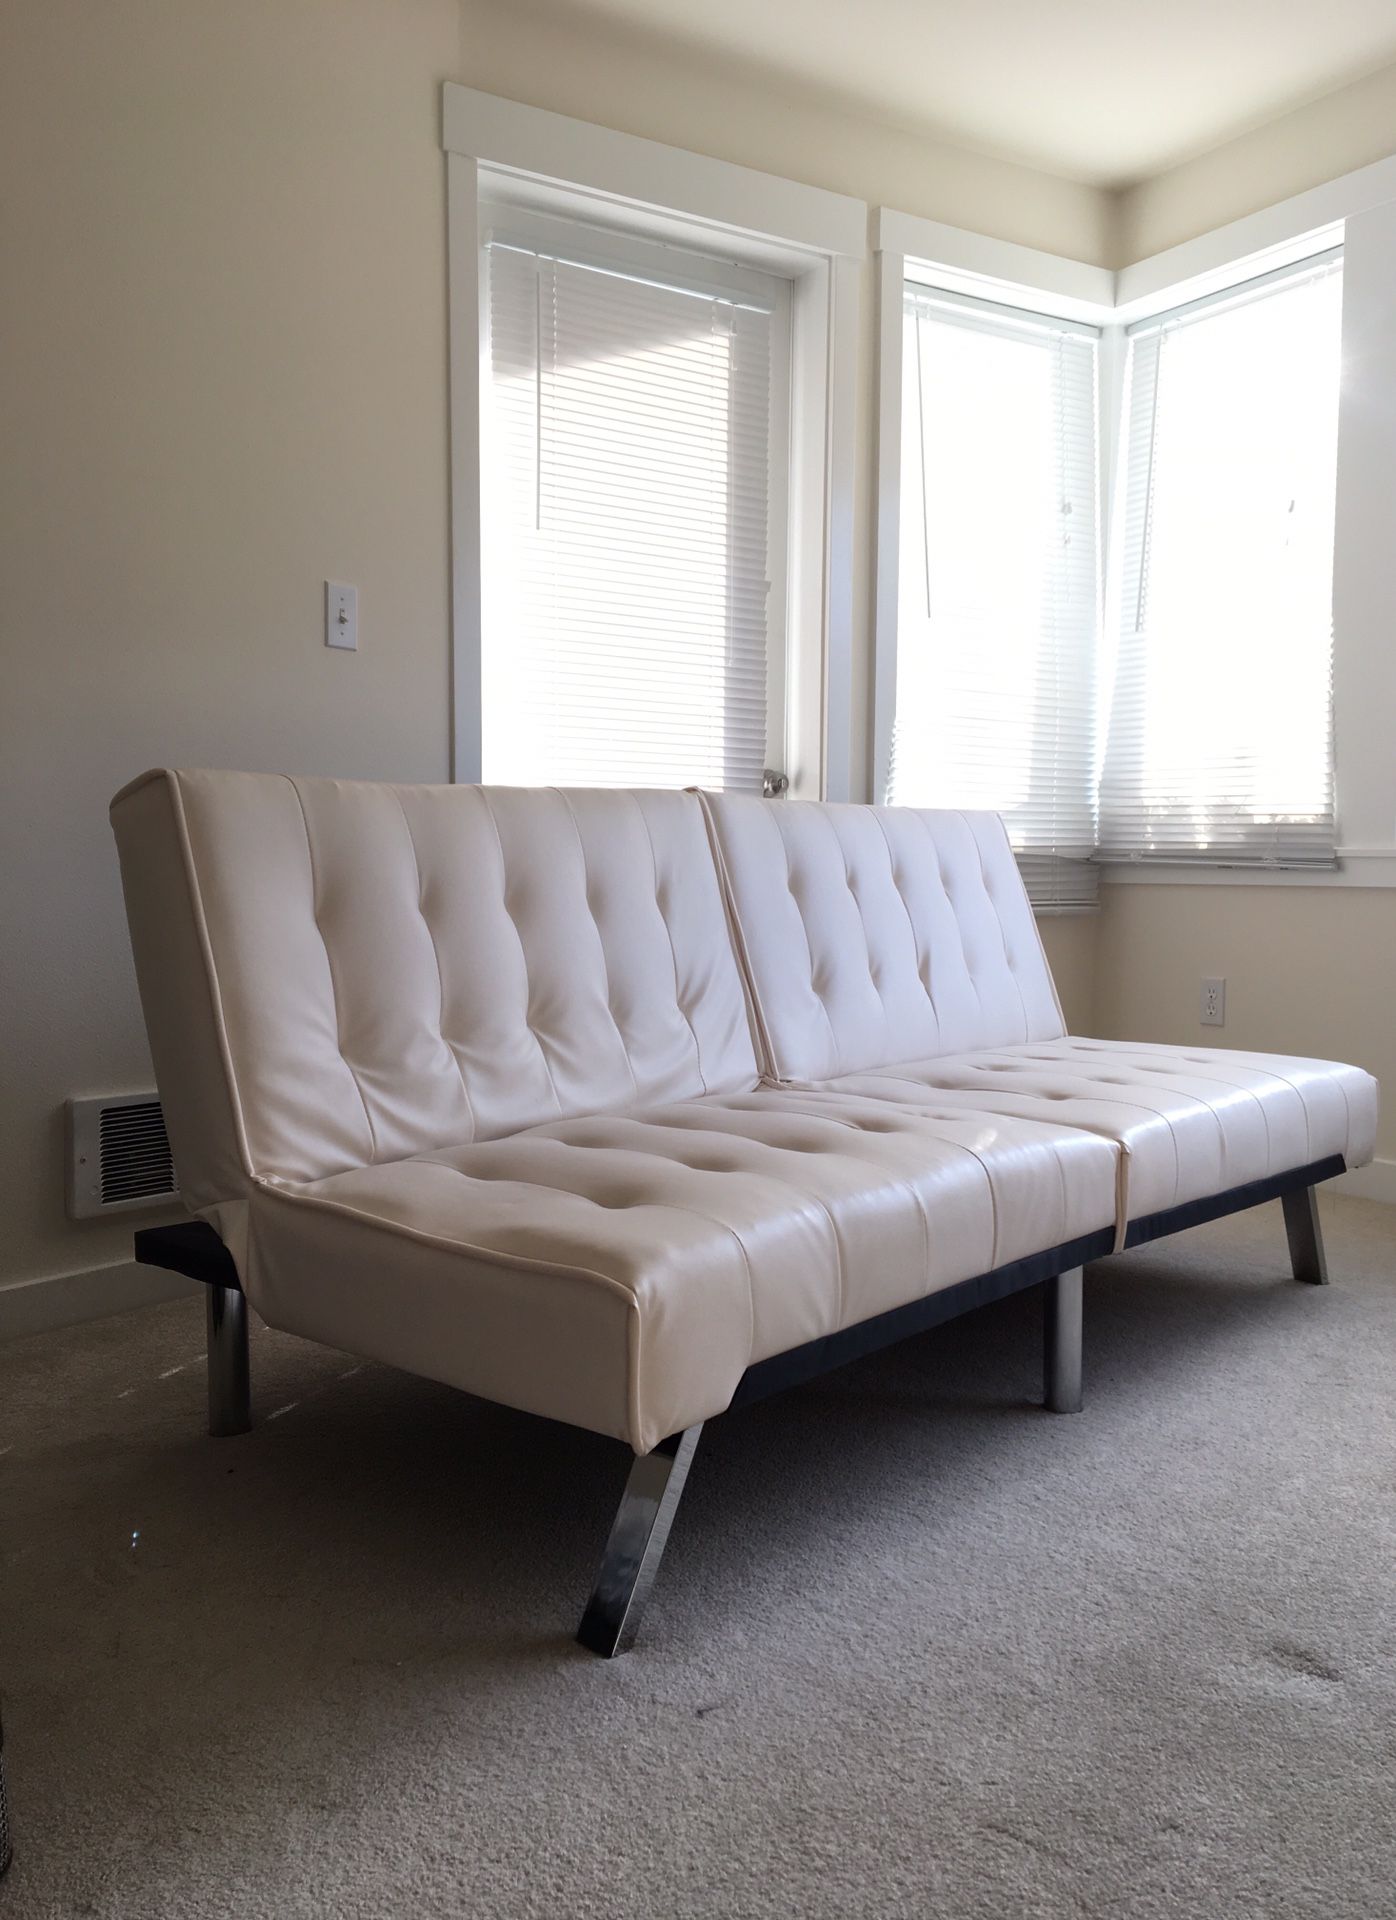 Eames inspired white futon